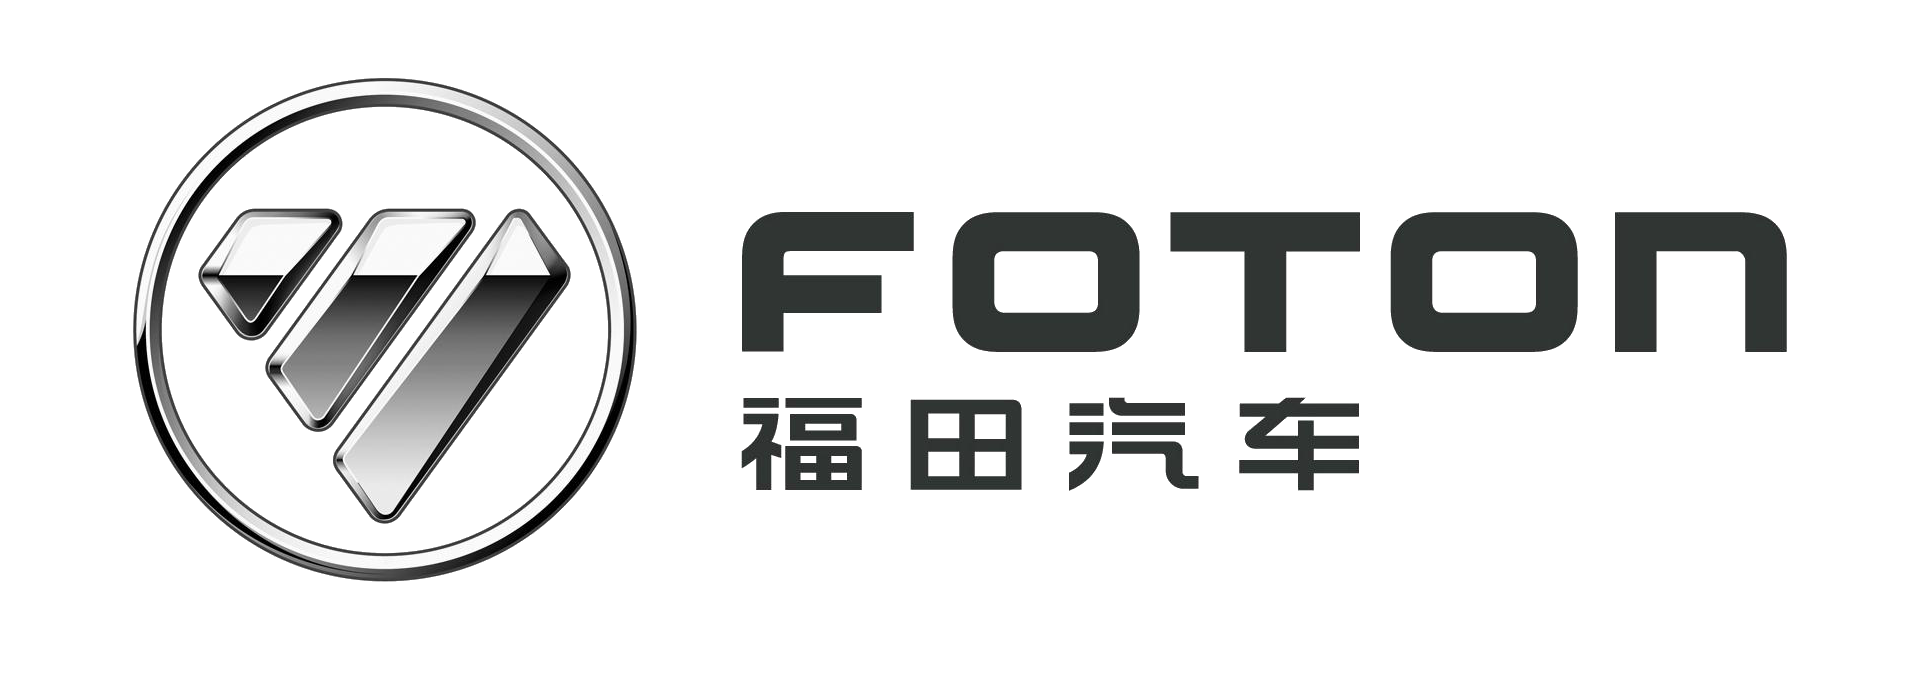 Foton-logo-1920x1080